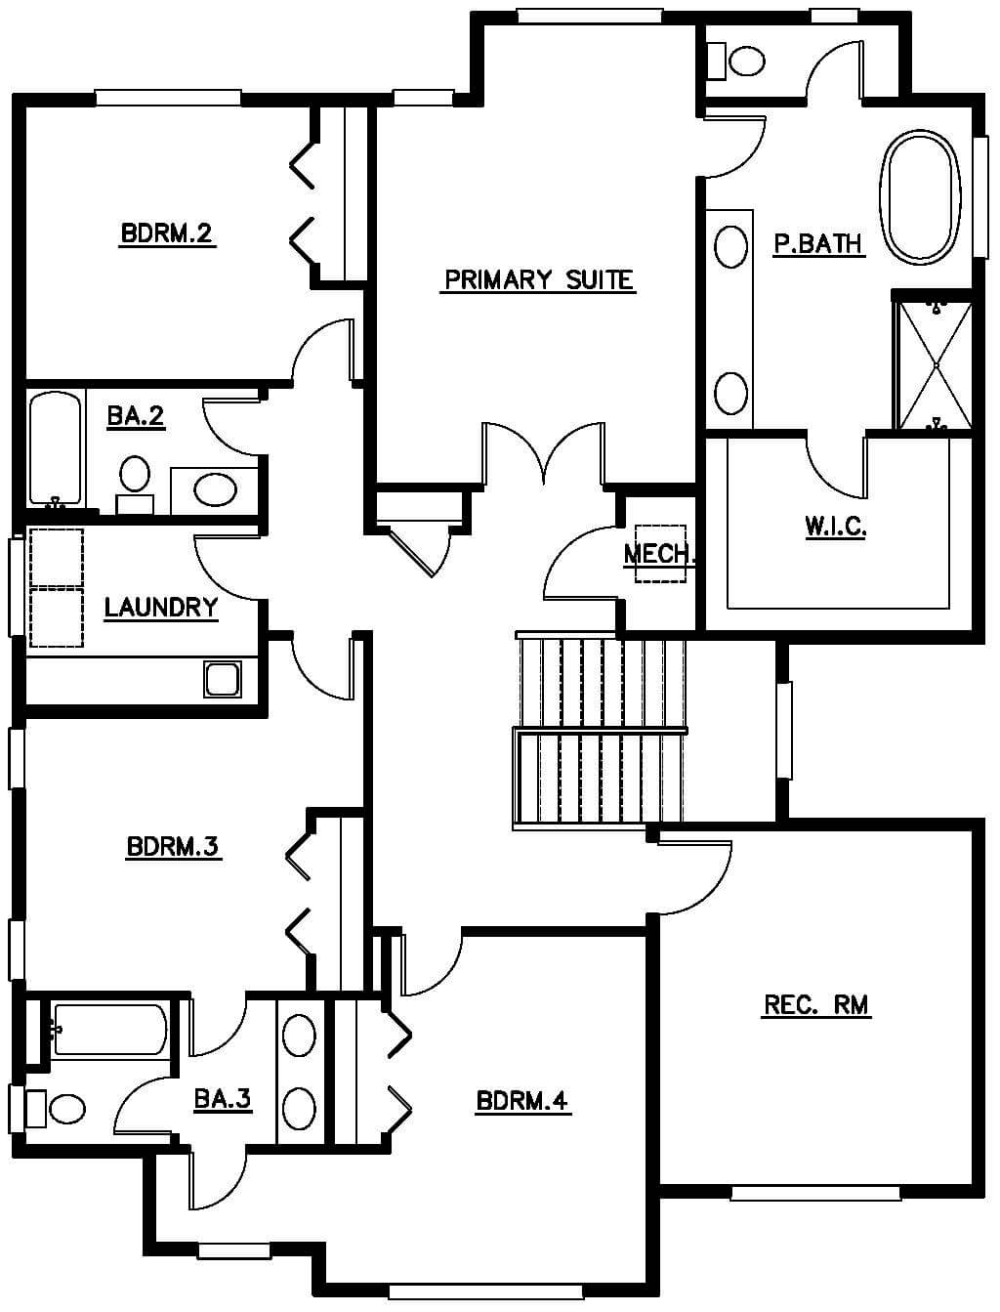 Upper Floor Plan floorplan for the Chelan - Lot 4 home